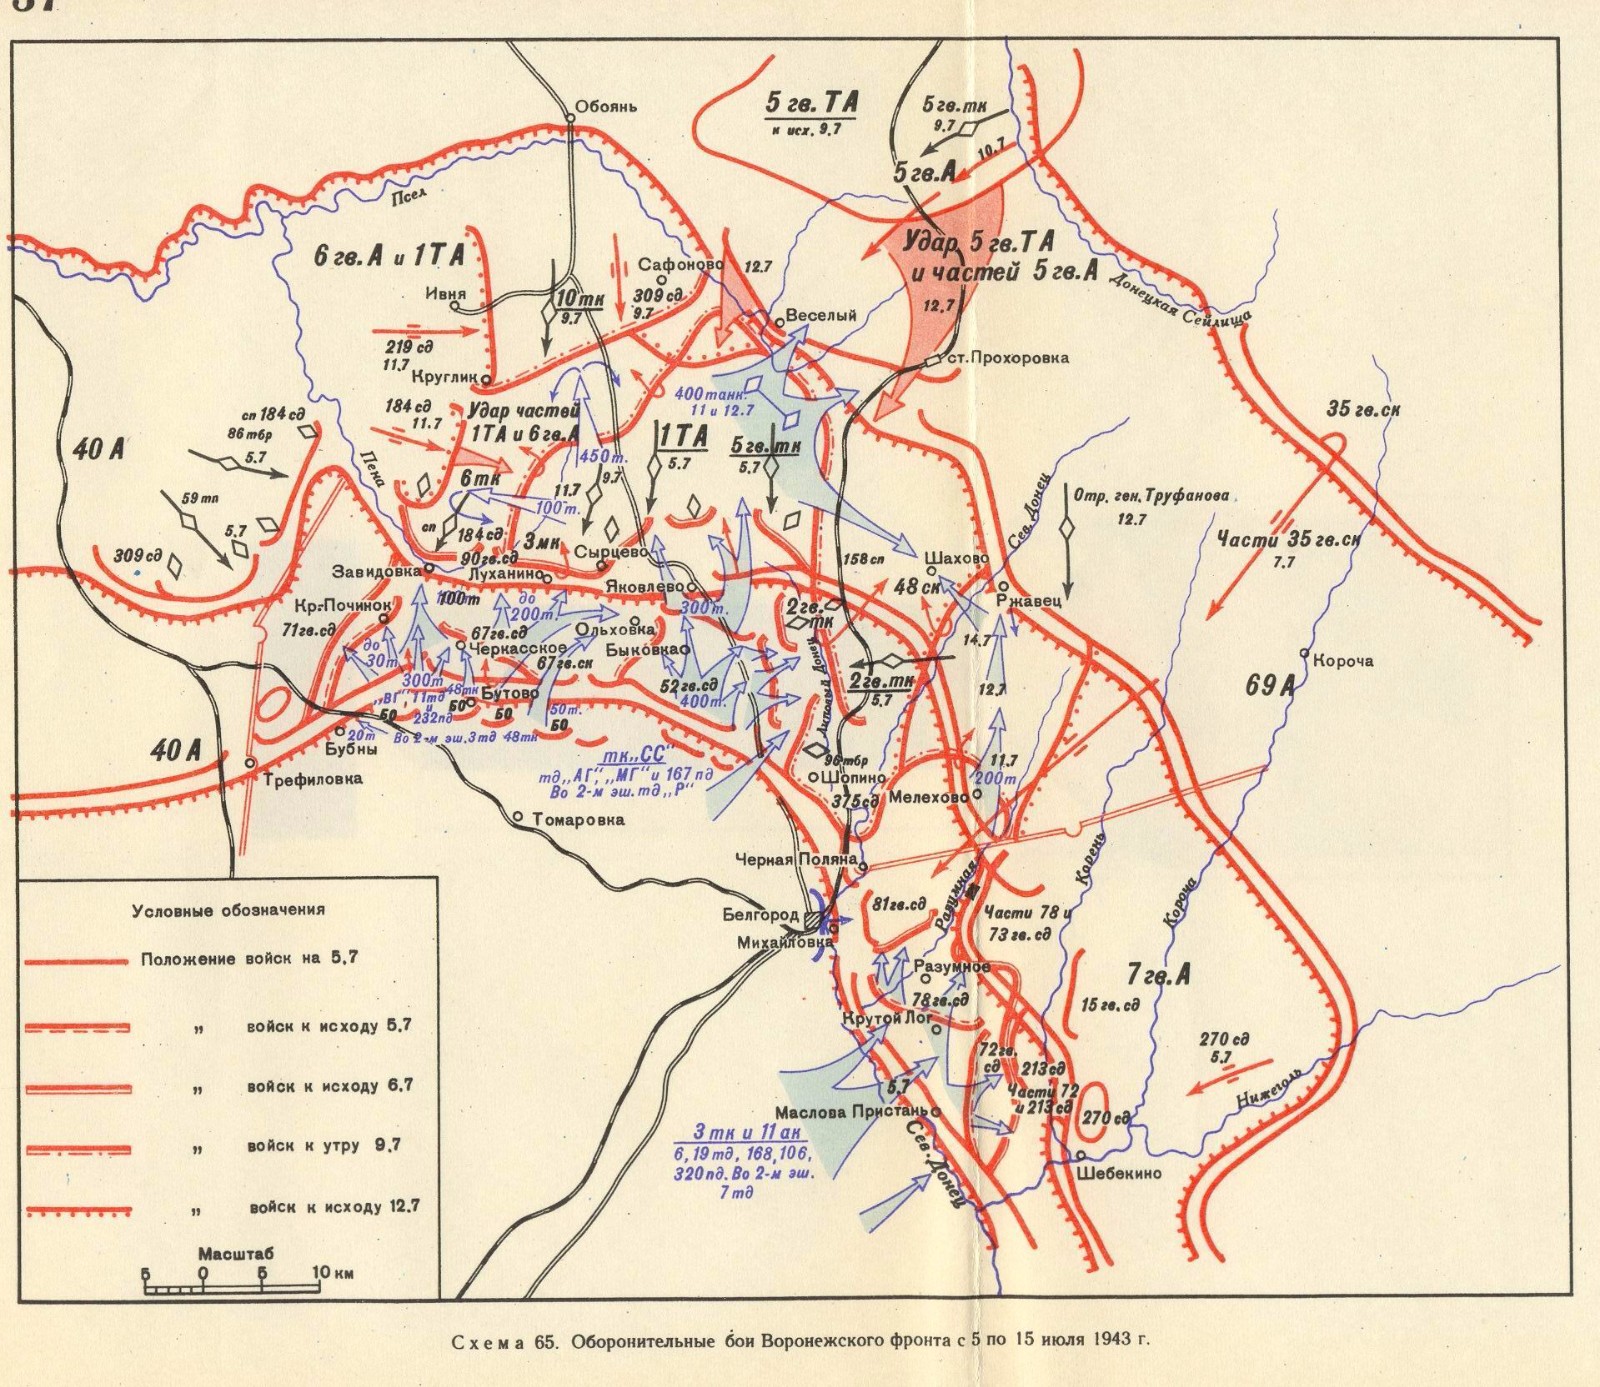 库尔斯克战役地图图片